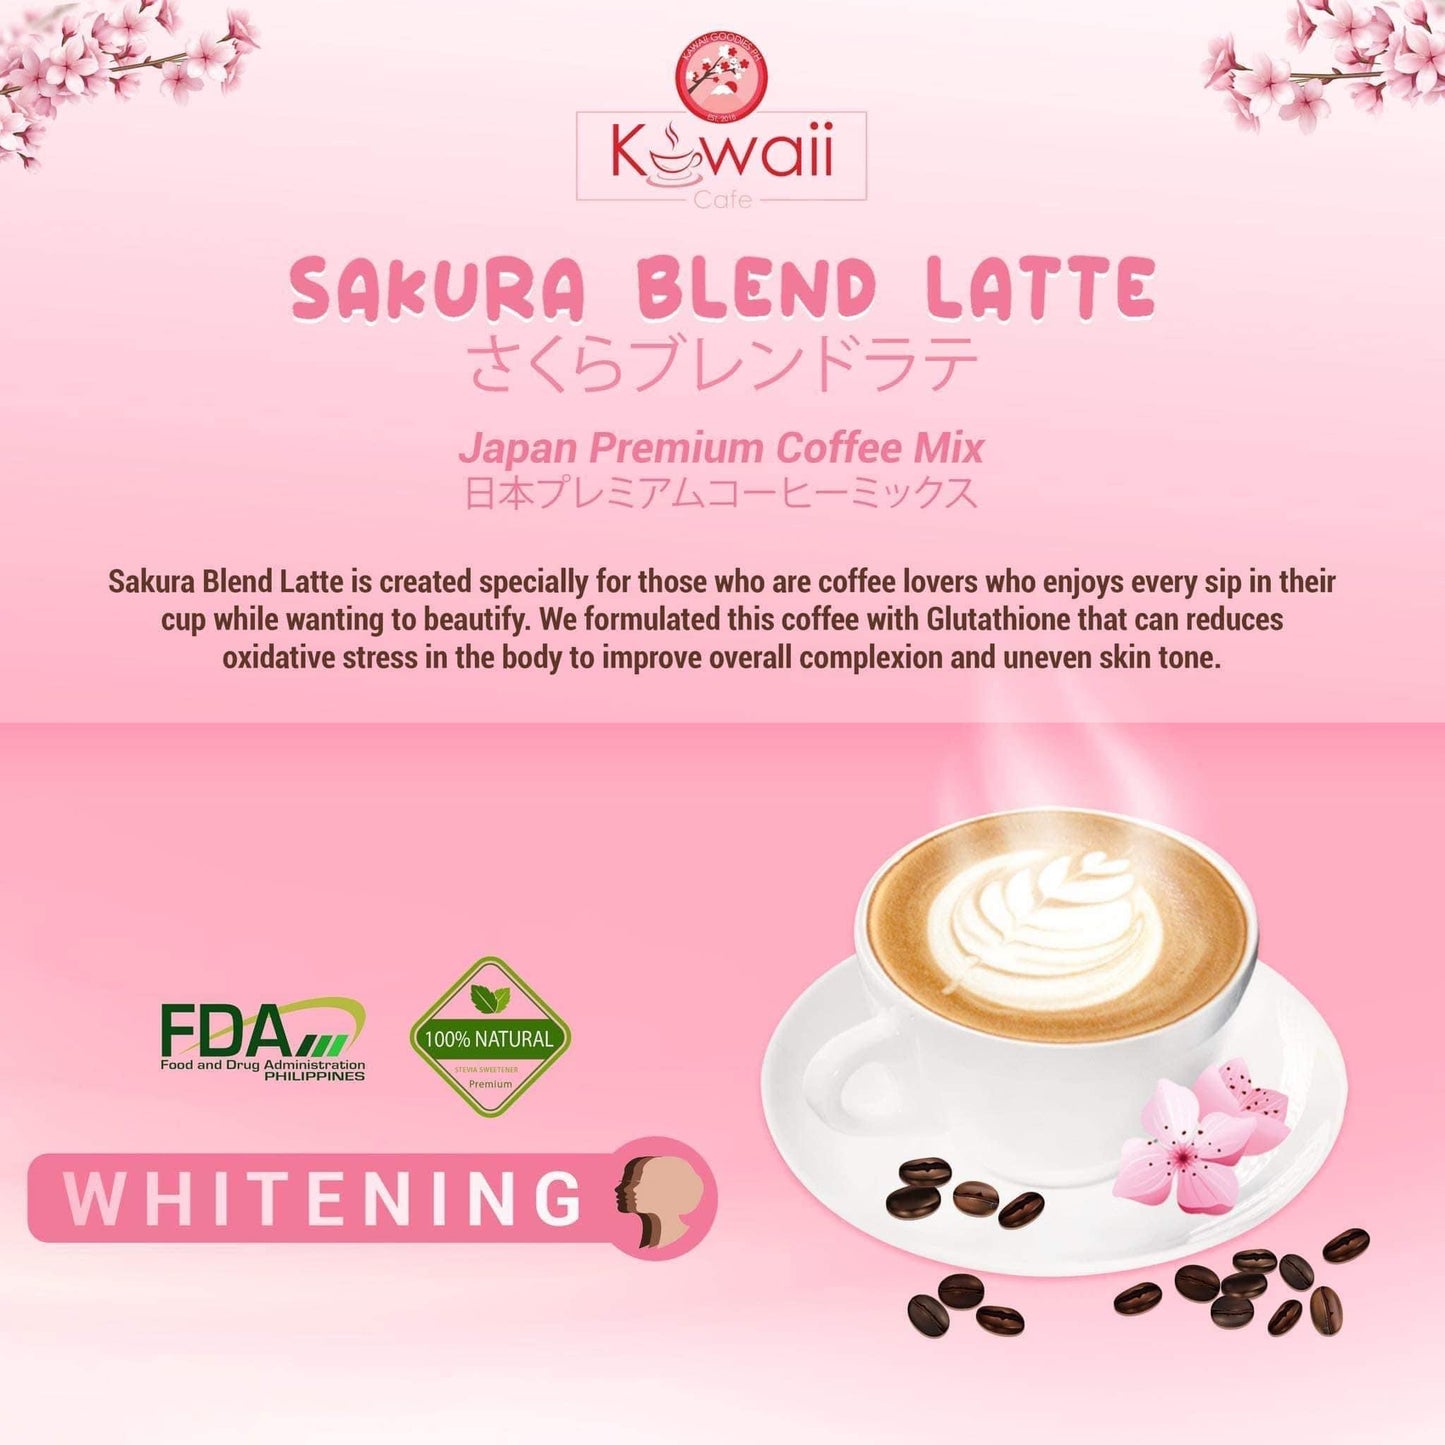 Sakura Blend Latte